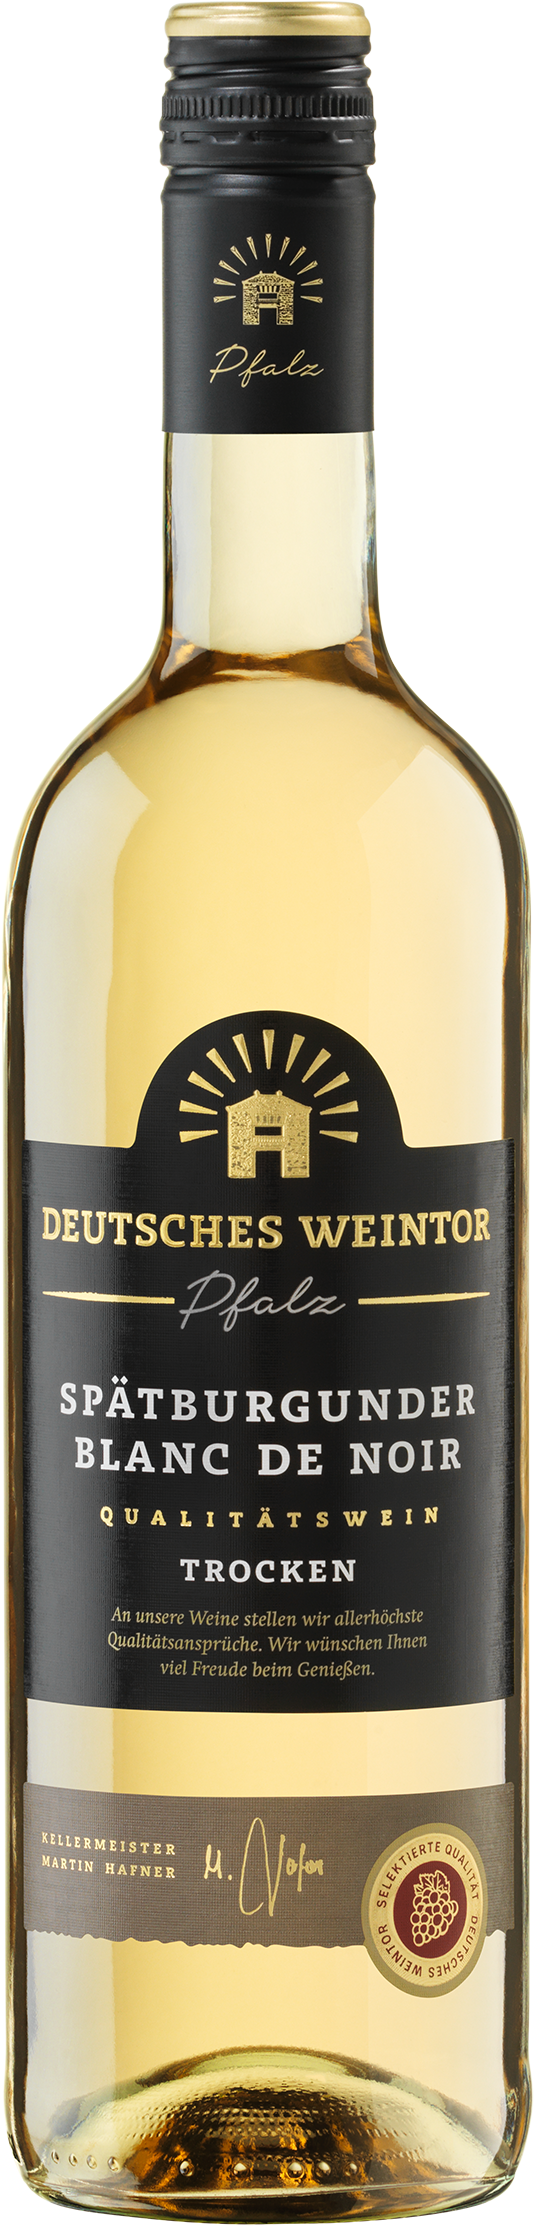 Shop: Deutsches Weintor